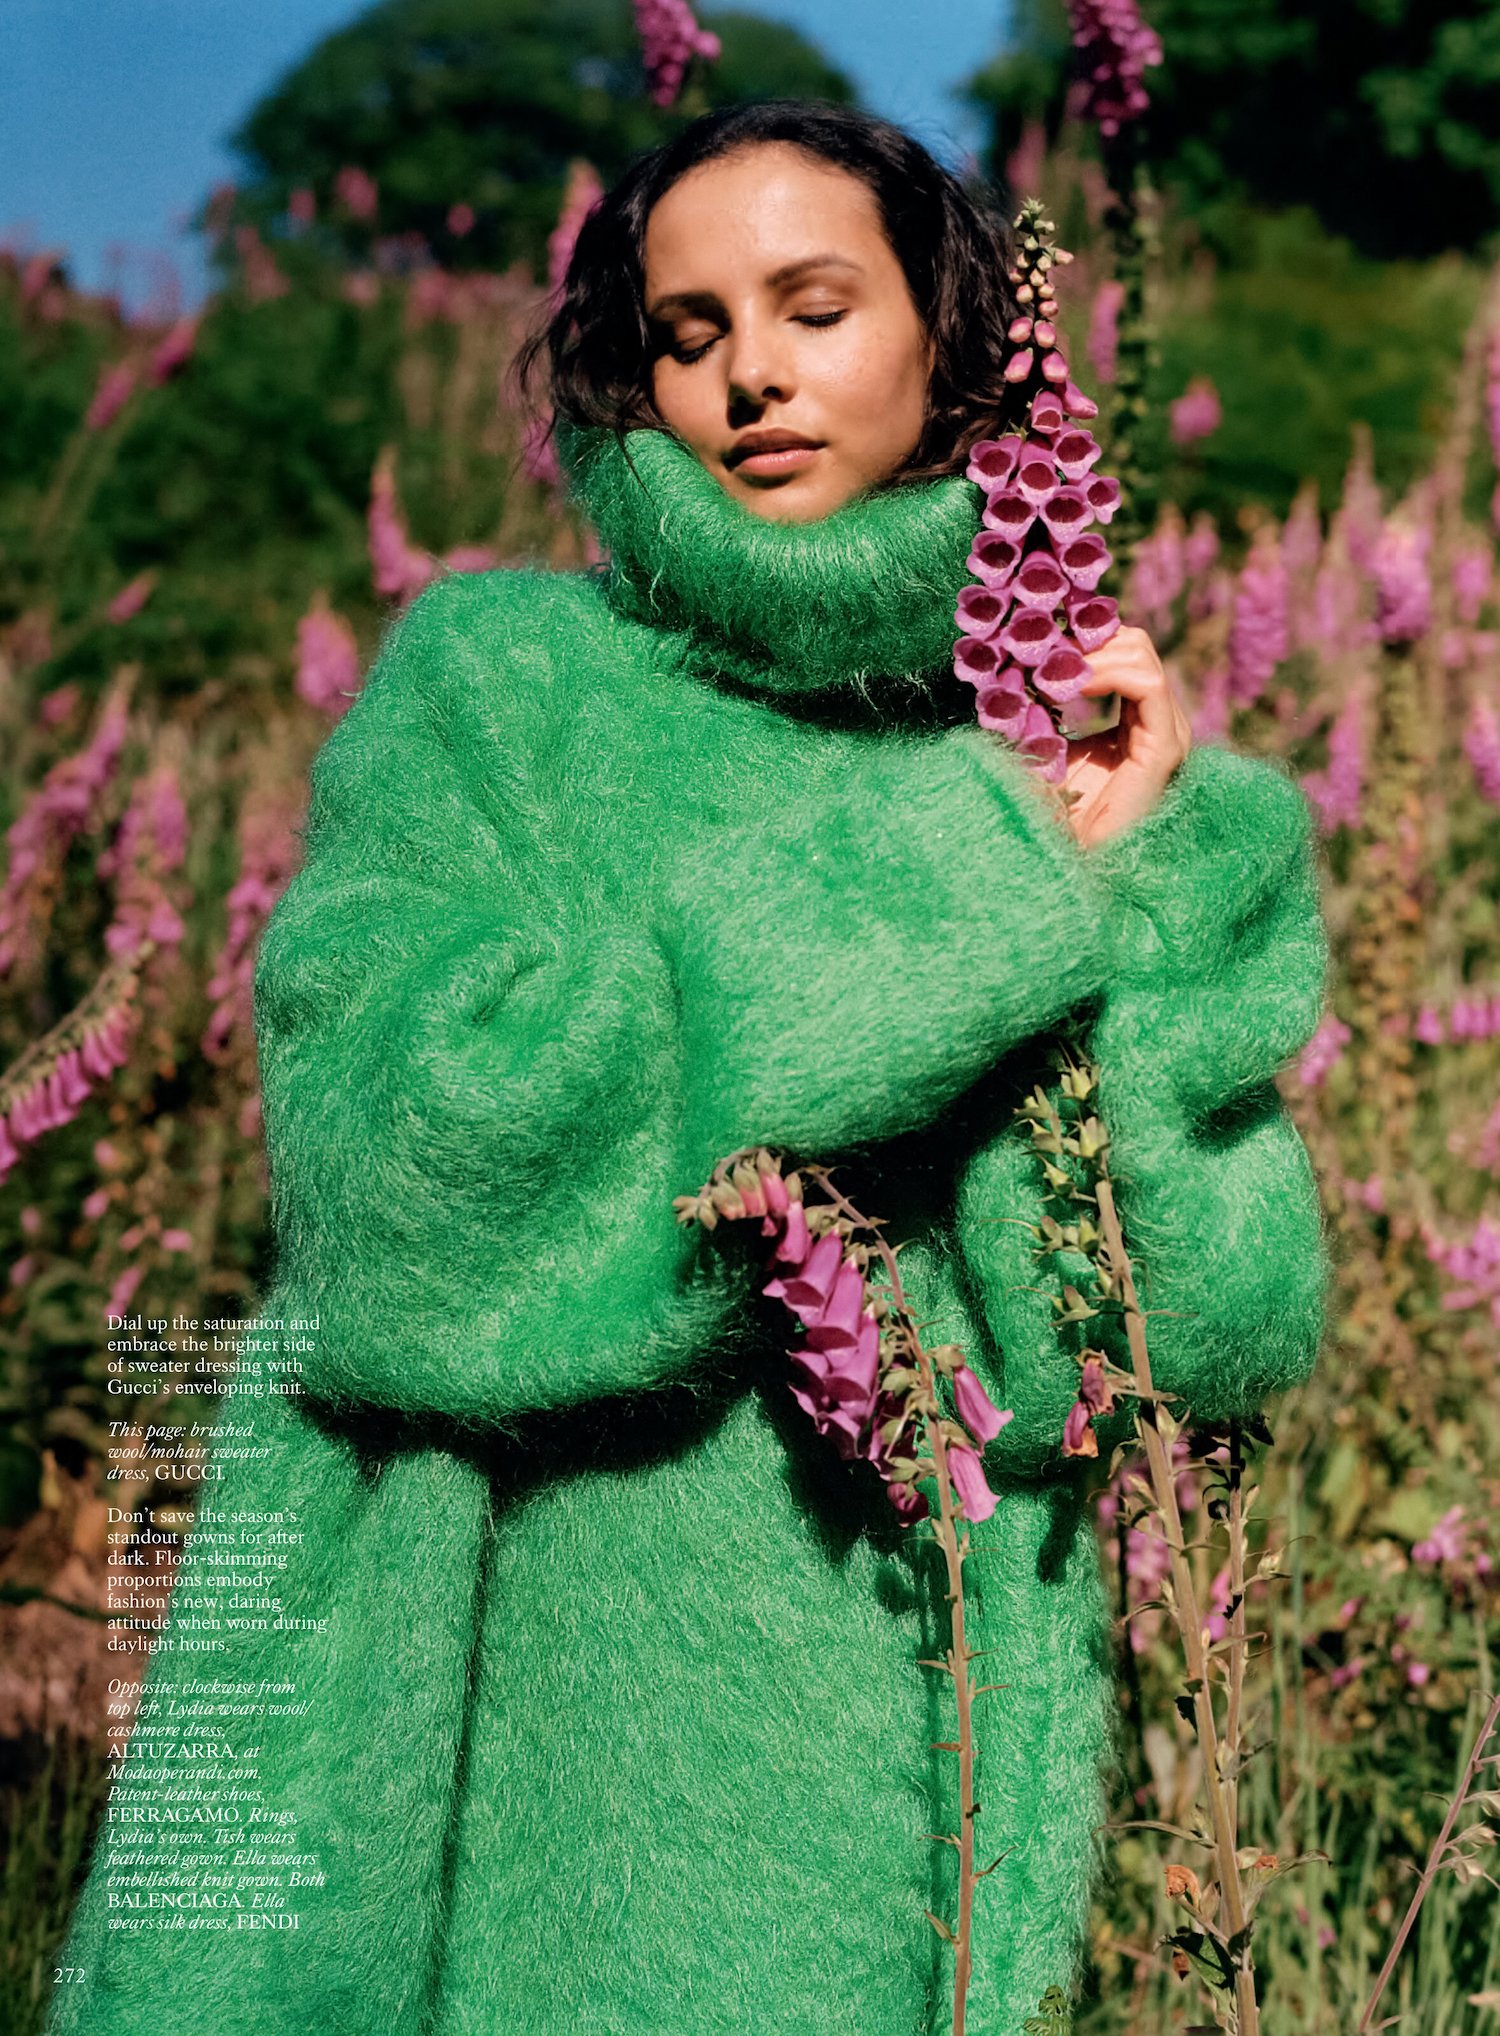 Sean-Thomas-for Vogue-UK-September-2023-12.jpeg